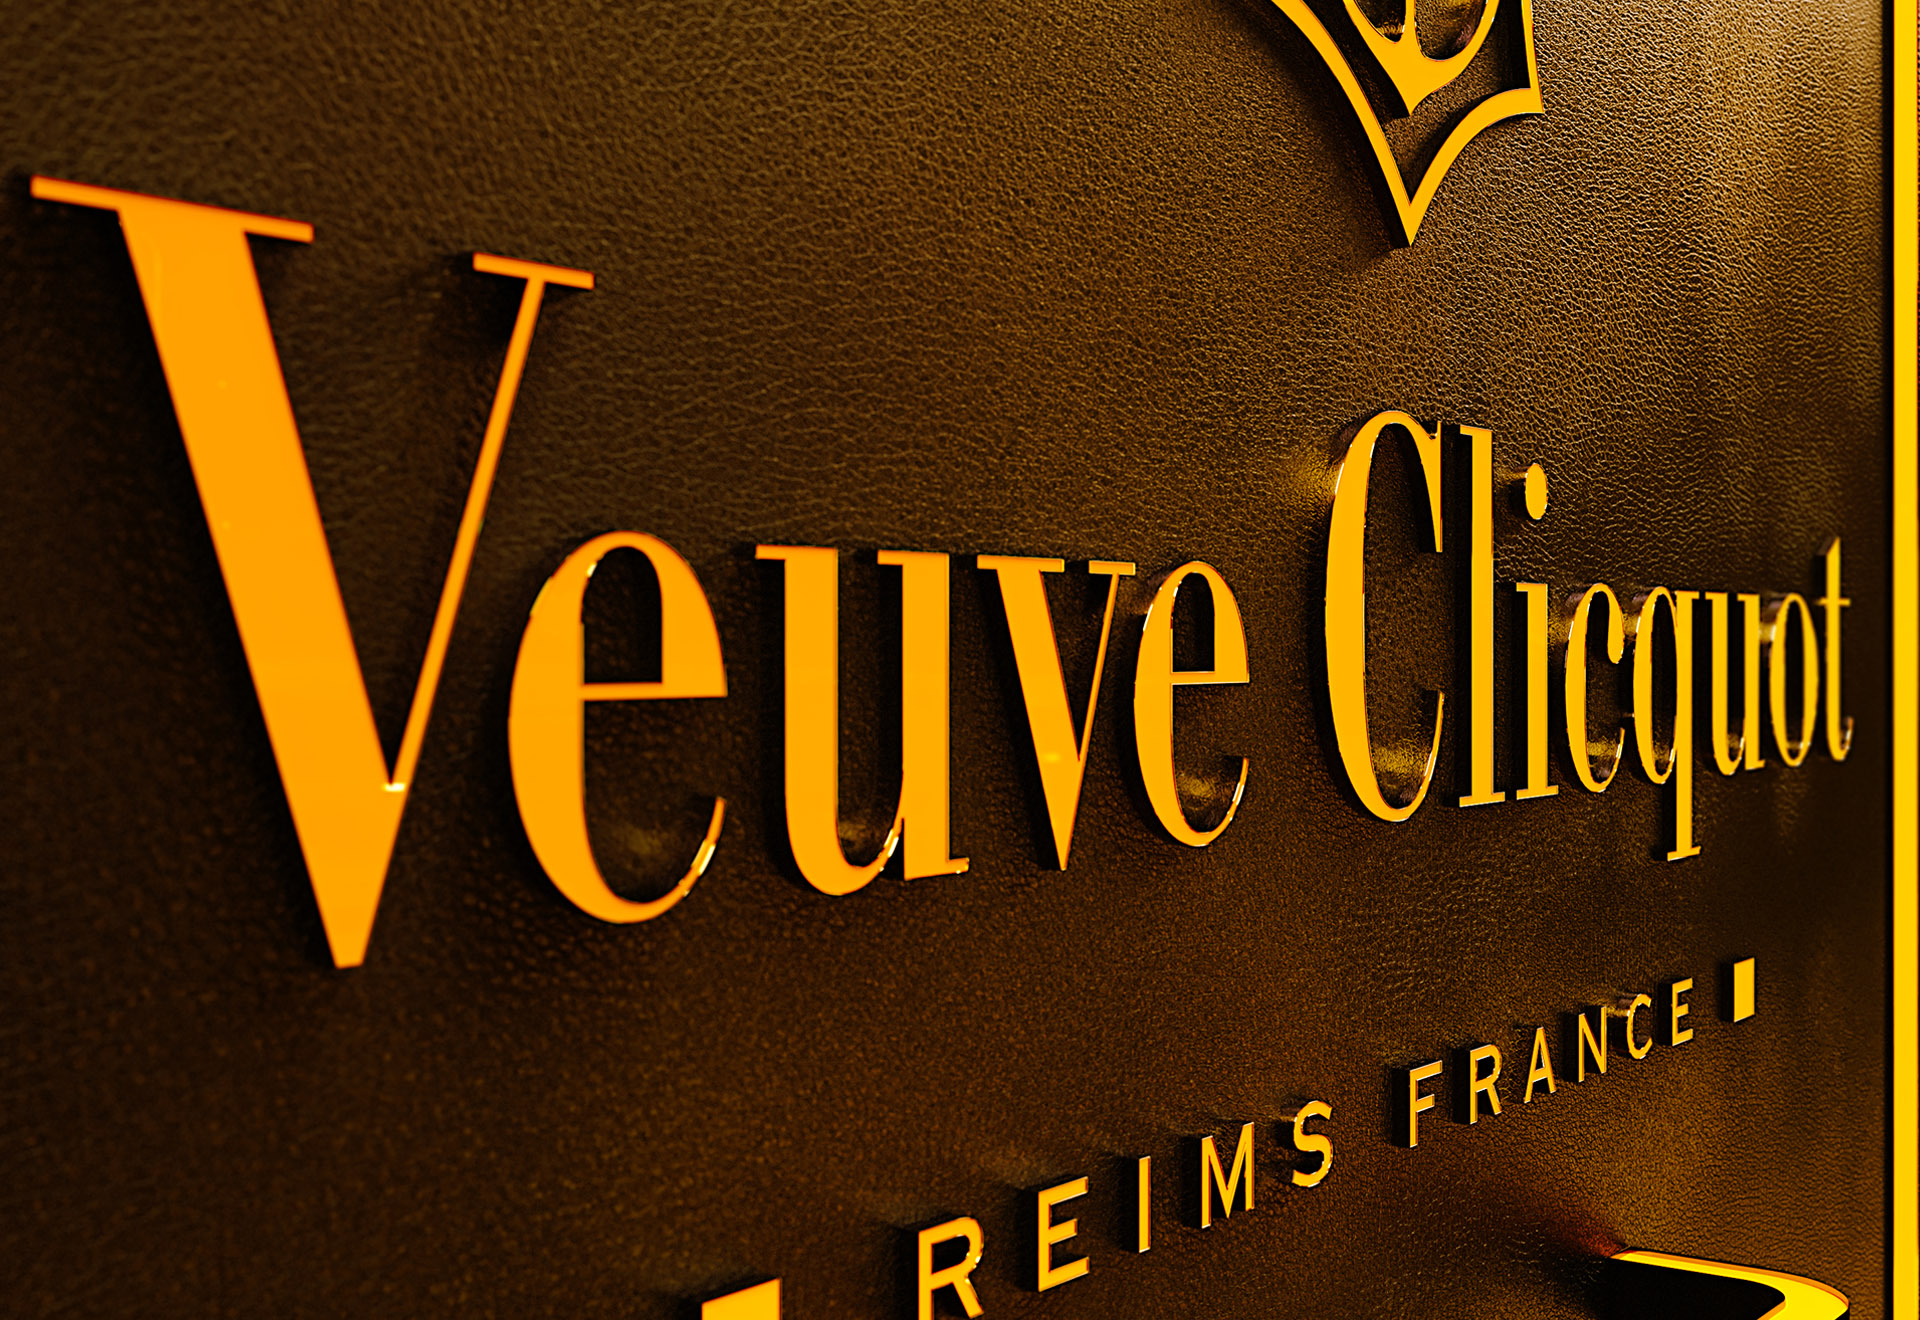 Veuve Clicquot Creative Display - DDA - project production design